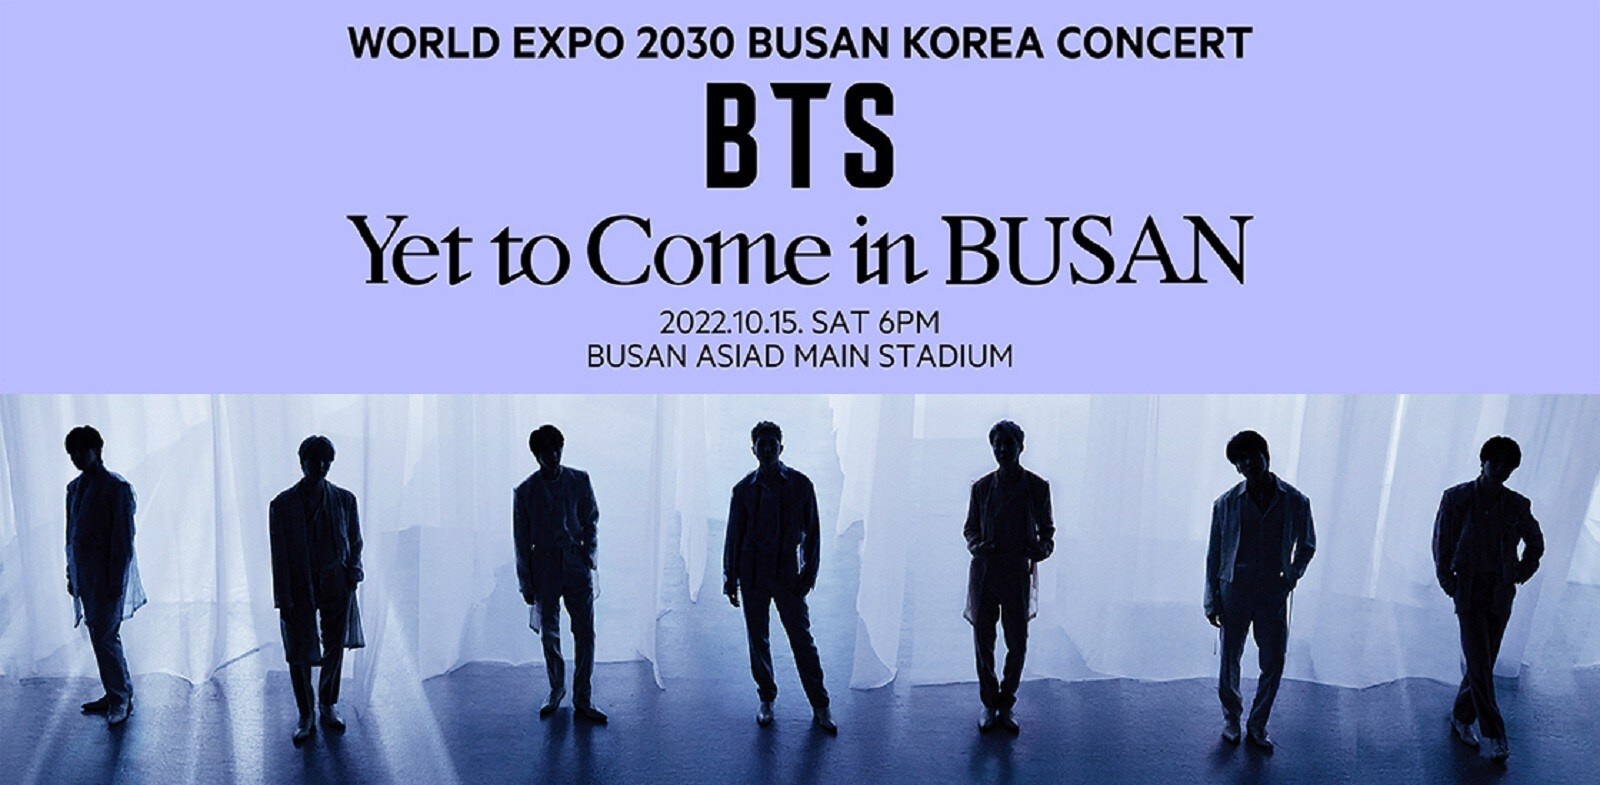 10月15日（土）に釜山アジアド主競技場で開催される「WORLD EXPO 2030 BUSAN KOREA CONCERT BTS Yet to Come in BUSAN」。画像はプレスリリース（※2）より。